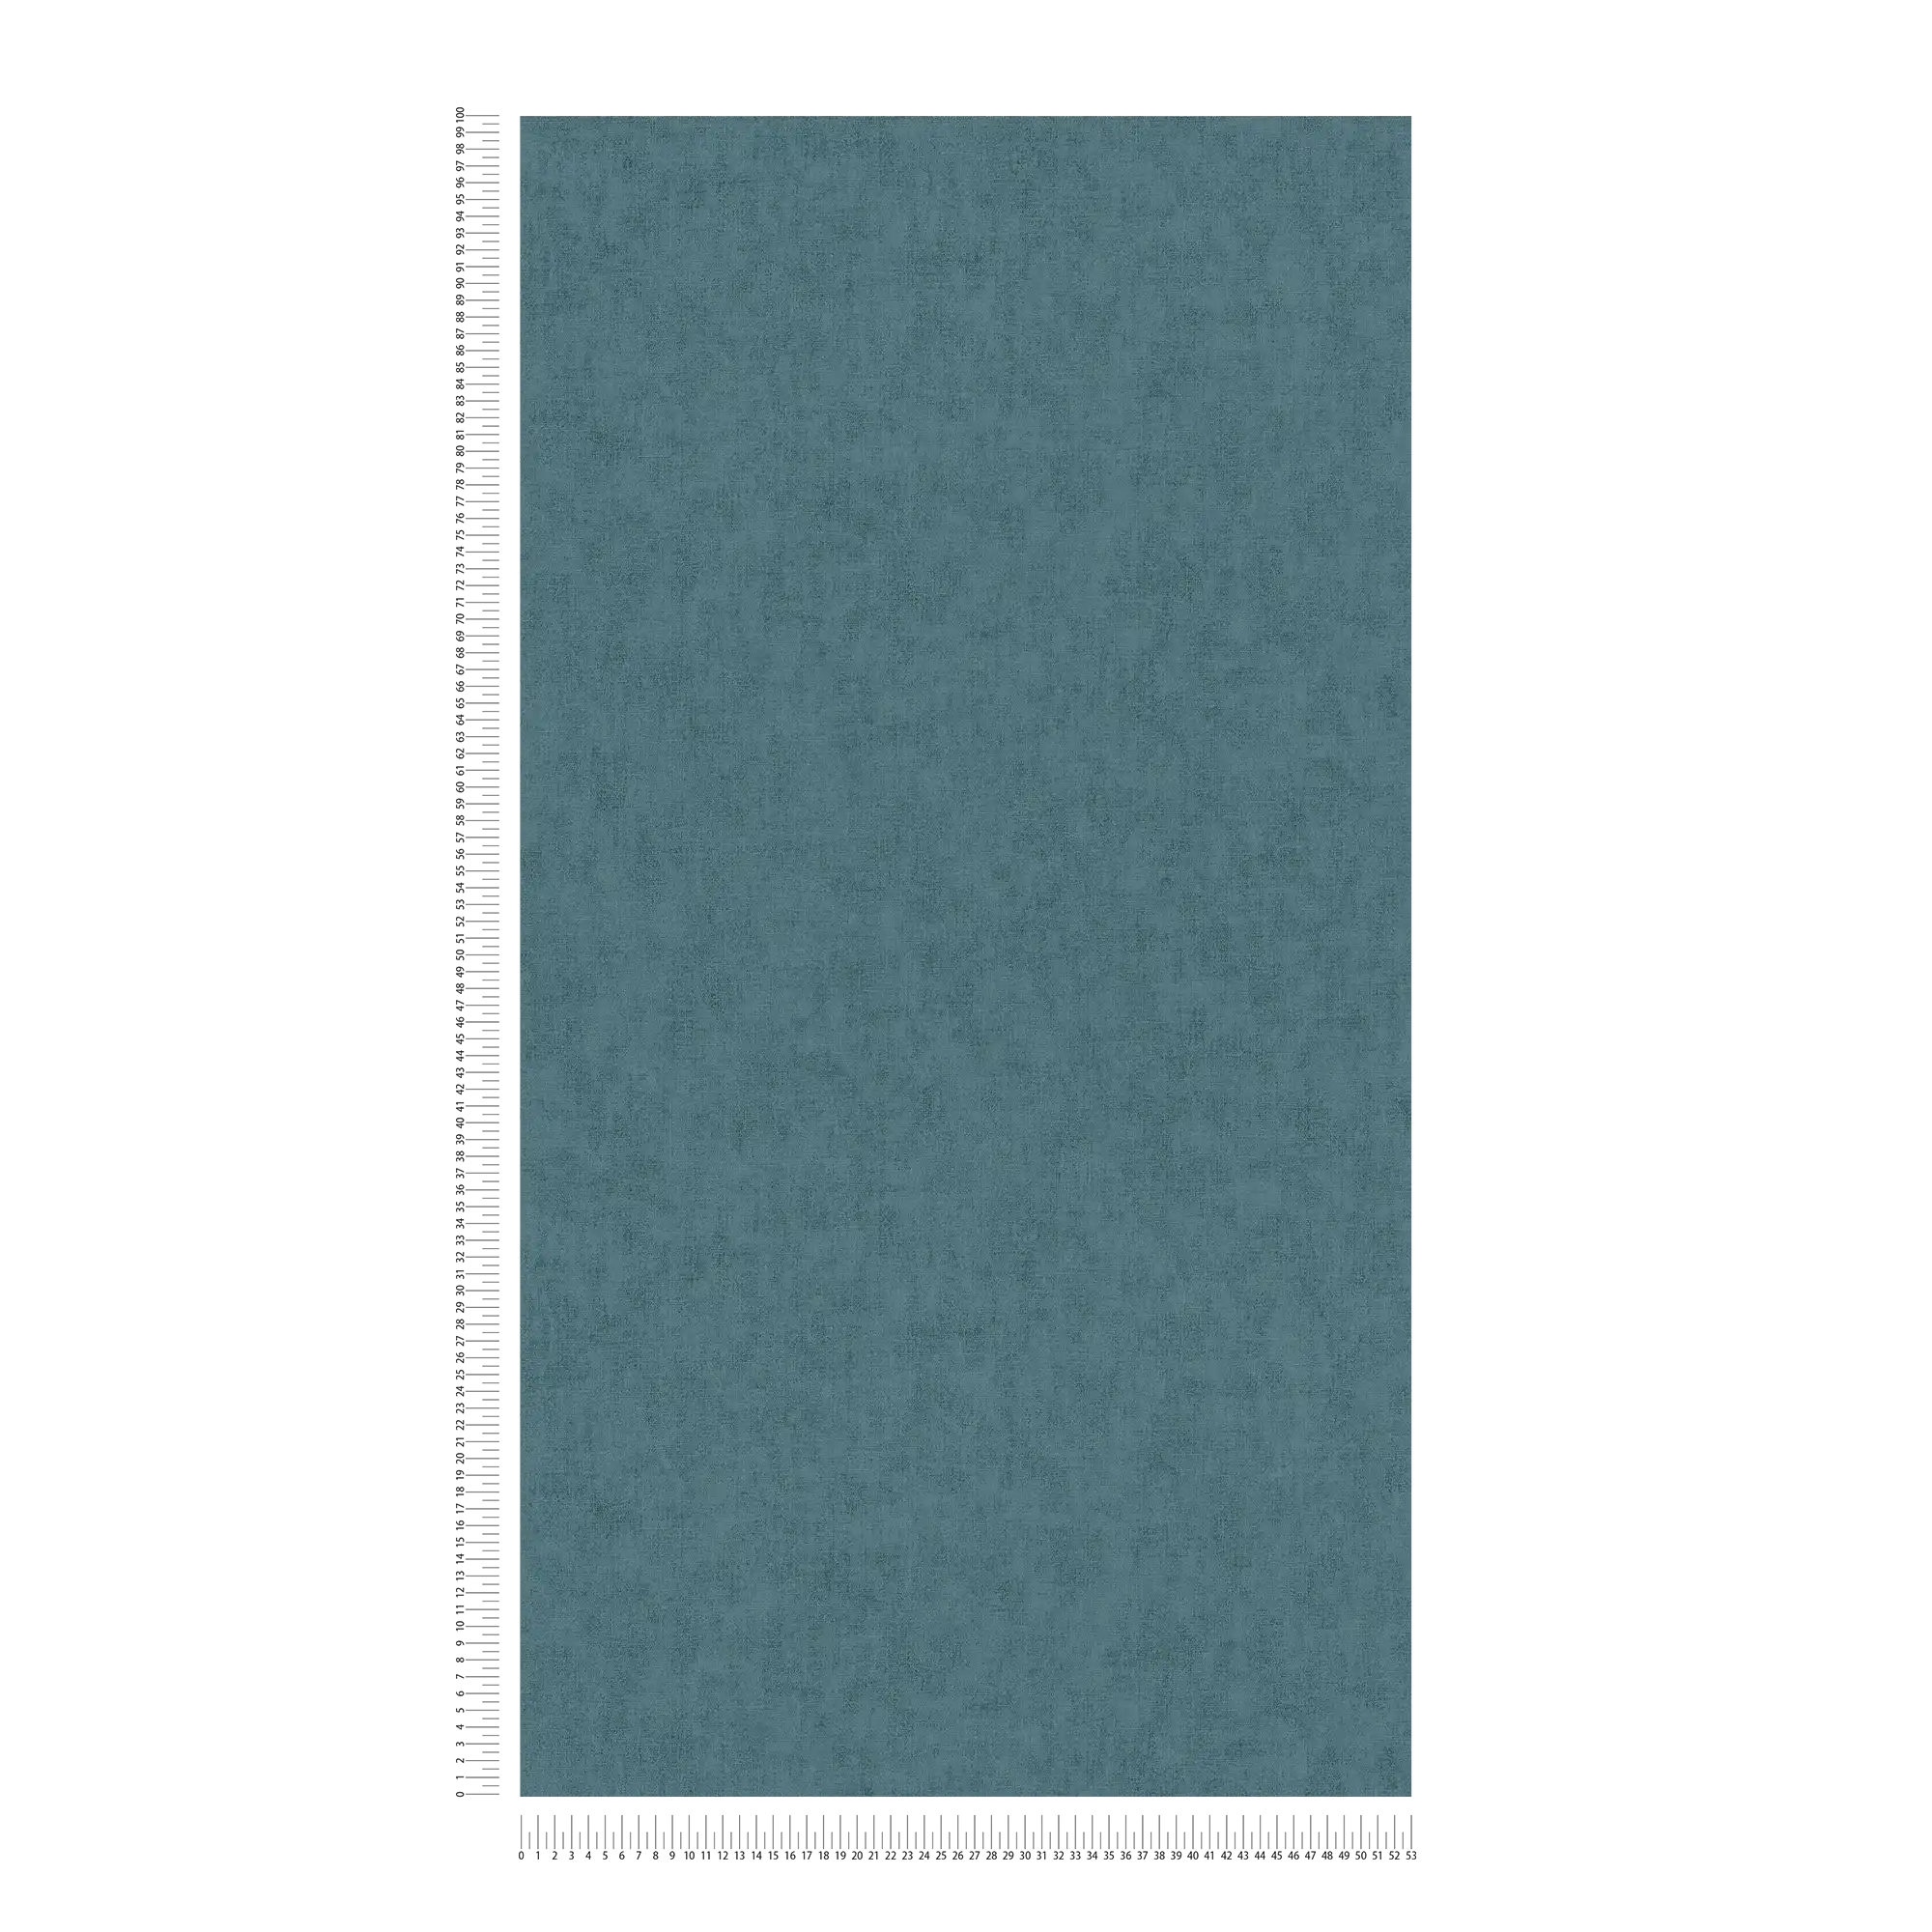             Carta da parati in tessuto non tessuto in stile scandinavo - blu, grigio
        